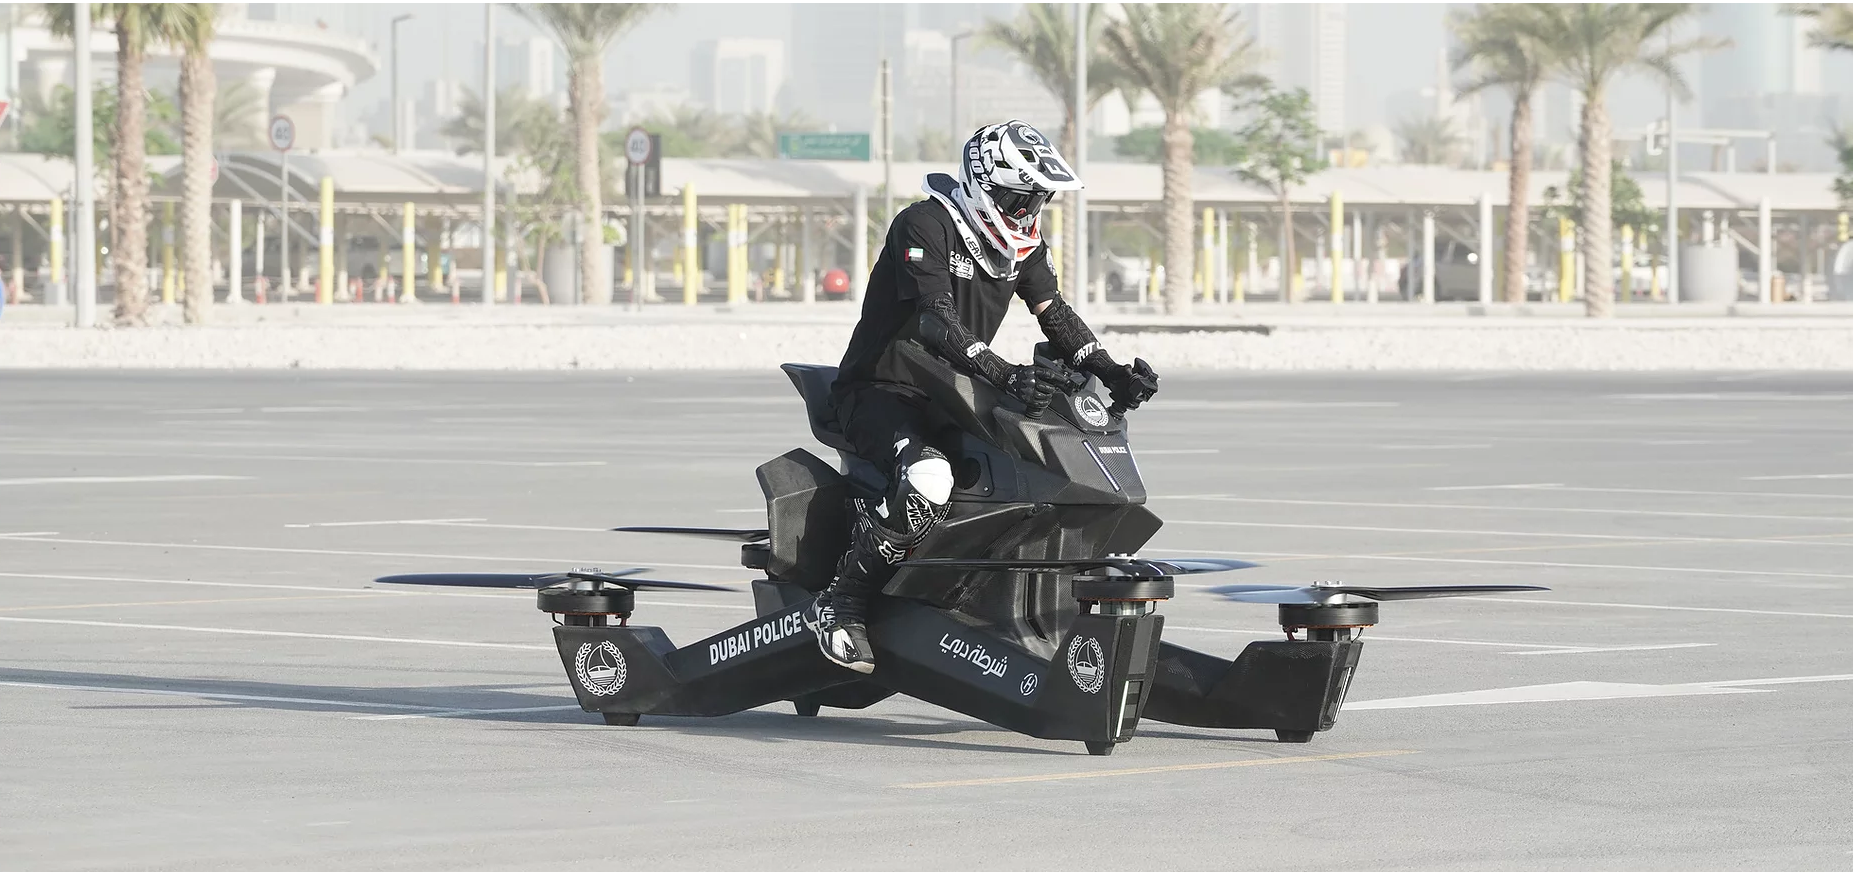 Uçan motosiklet Scorpion 3, 150 bin dolar fiyat etiketiyle satışa sunuluyor